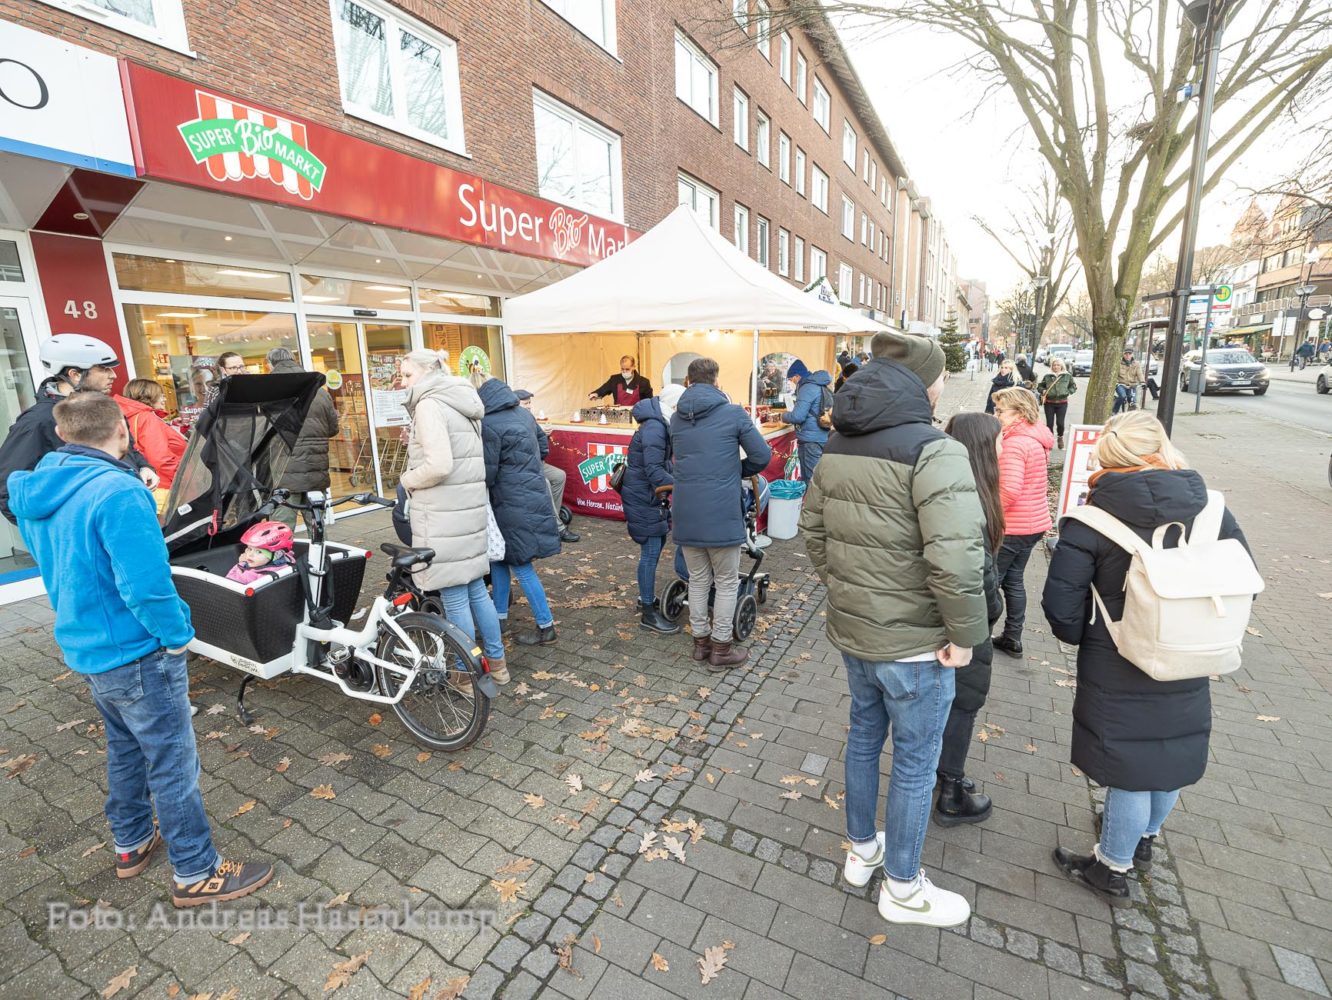 Impressionen von der Andrang auch vor dem SuperBio-Markt und seinem Würstchen-Stand in Münster-Hiltrup. Foto: anh.